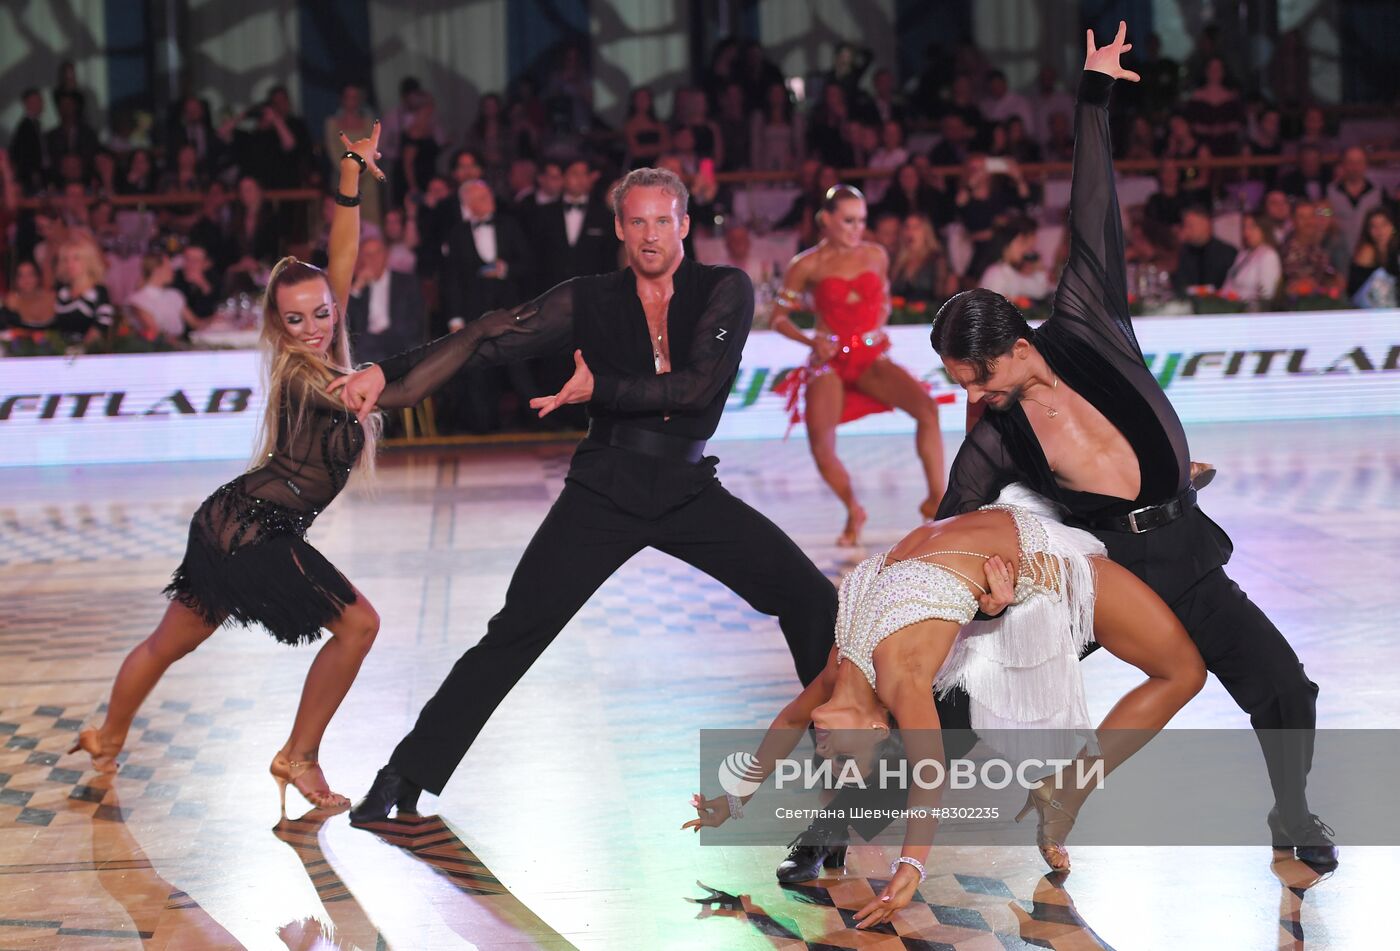 Участники танцевального турнира "Кубок Кремля - Гордость России!" в Кремлевском дворце. В турнире участвуют 24 танцевальных дуэта, которые были определены по результатам их участия в последних российских и международных турнирах.